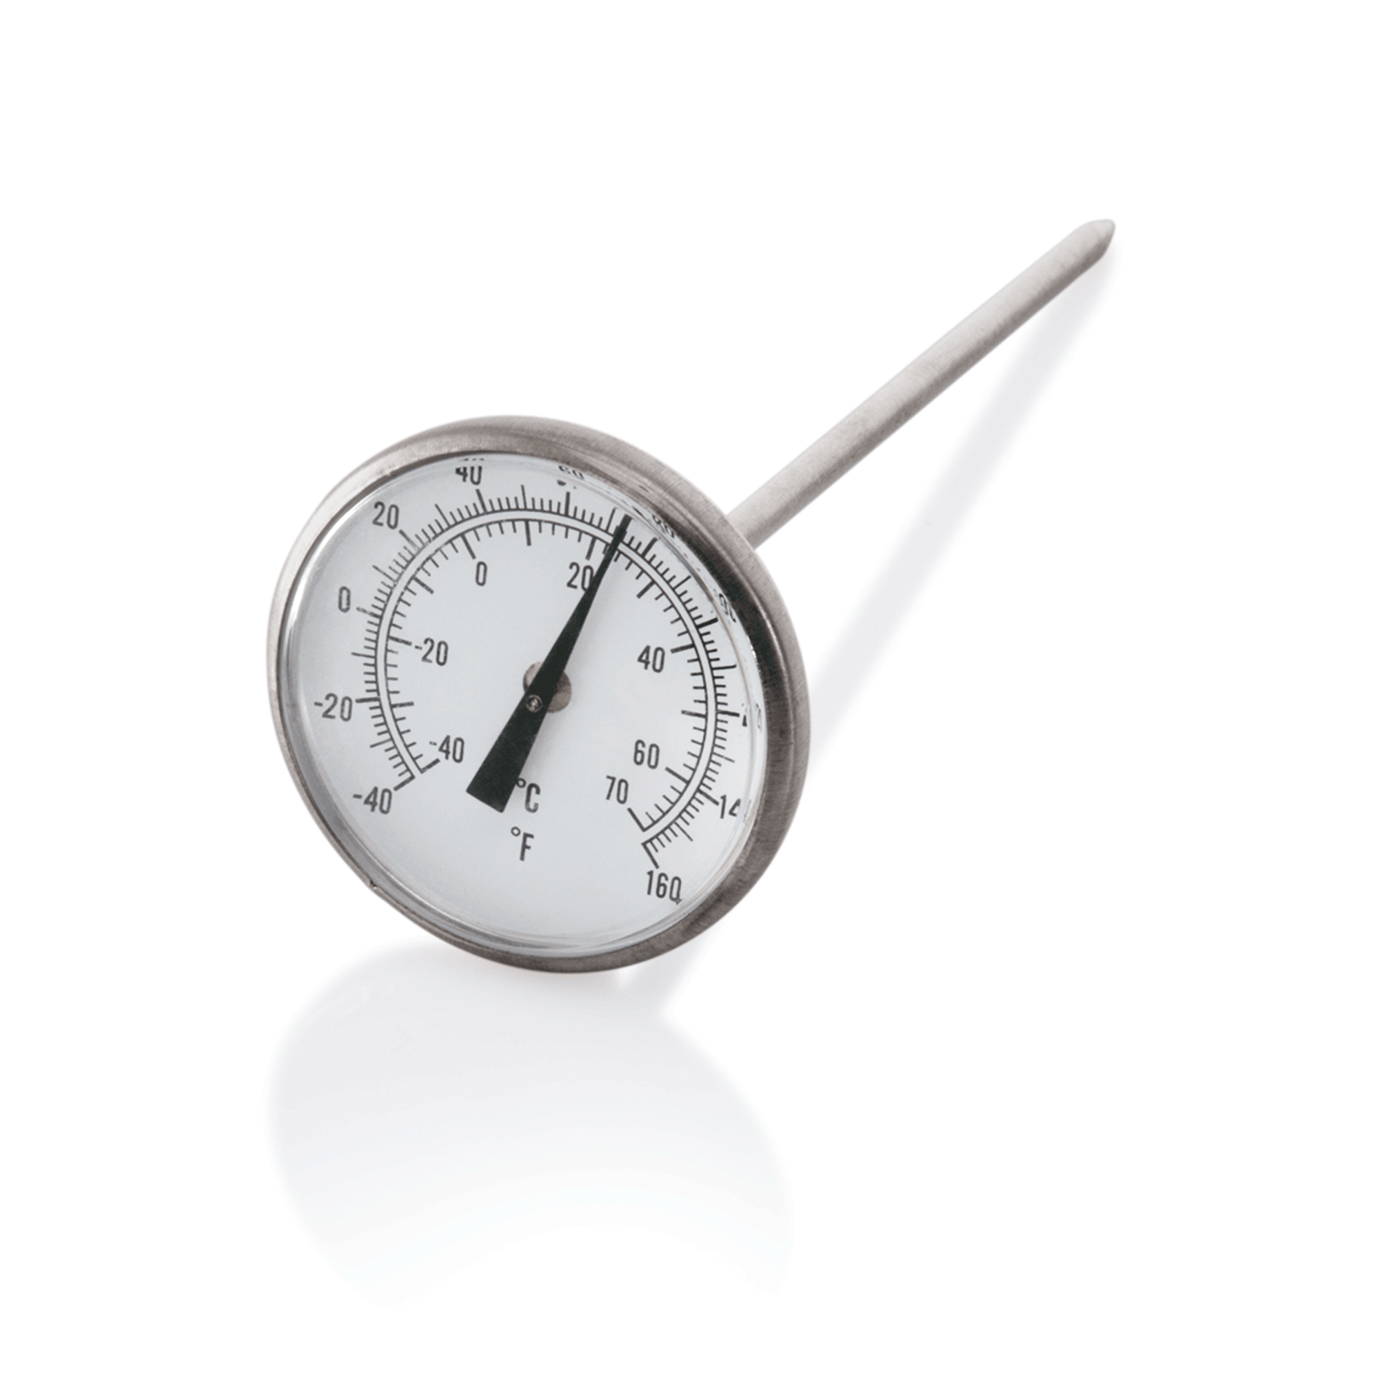 Einstechthermometer. Einstechtiefe 12,5 cm. Temperaturmessbereich -40 °C ~ 70 °C, -40 °F